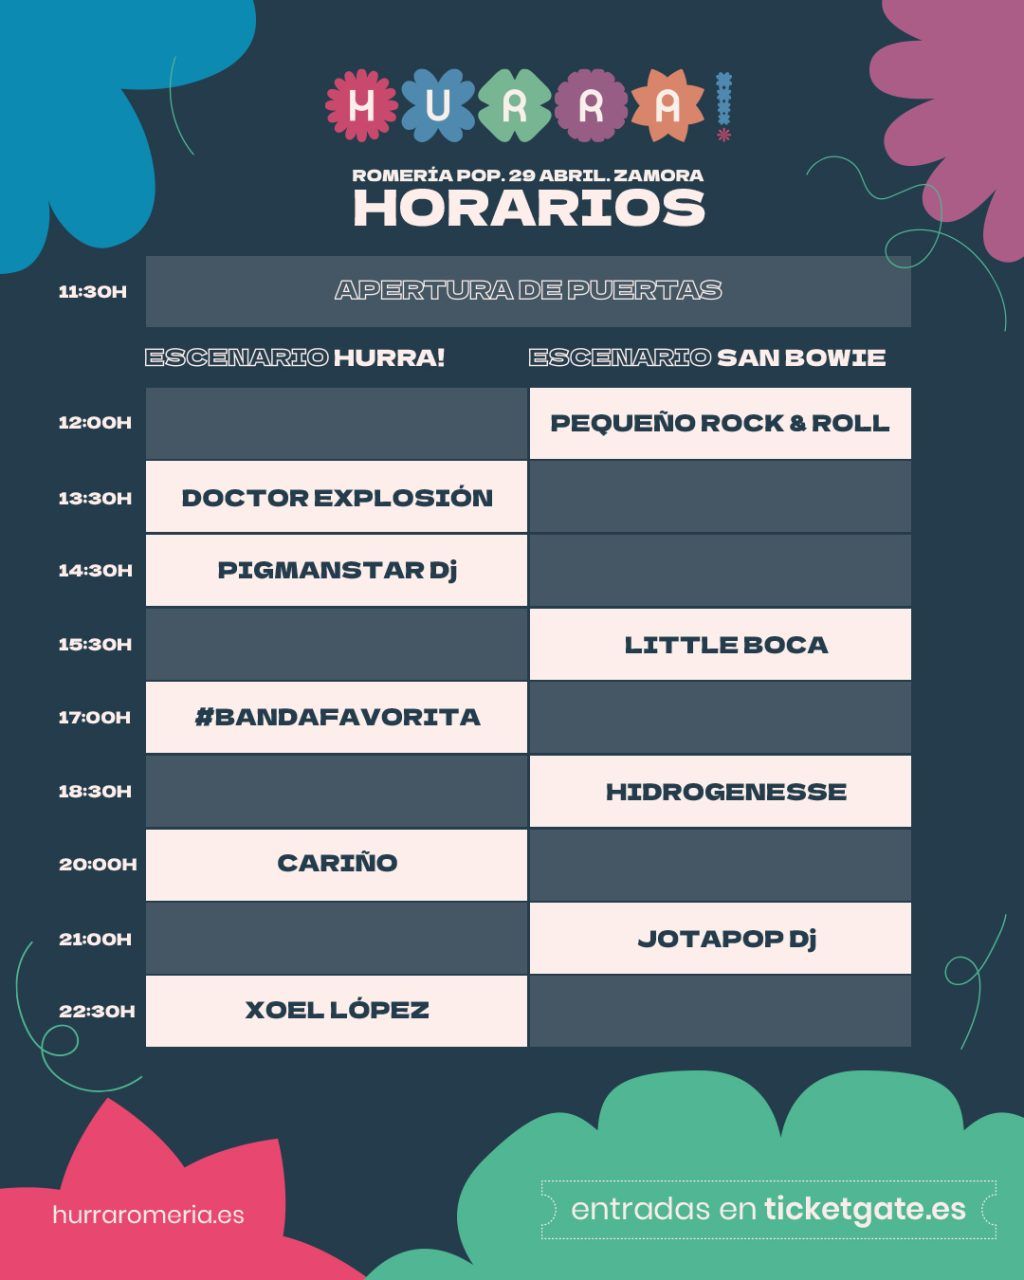 Hurra! Romería Pop - Festival Zamora 2023 - Horario